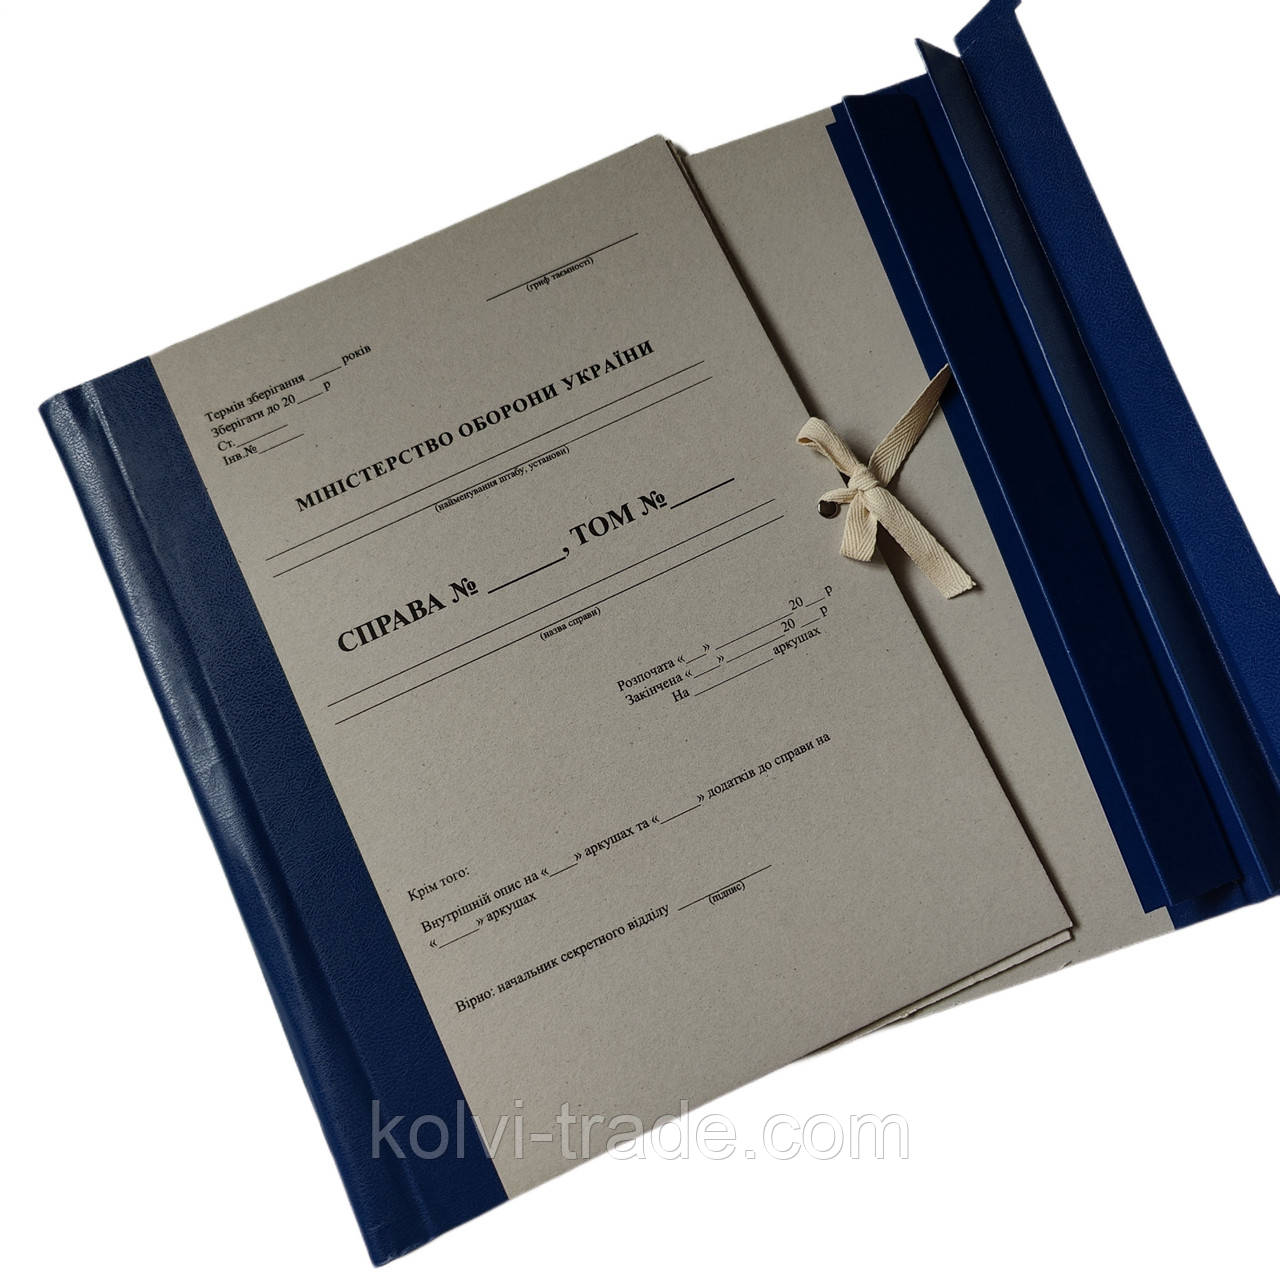 Папка архівна на зав'язках з титулкою Міністерство оборони України 20 мм